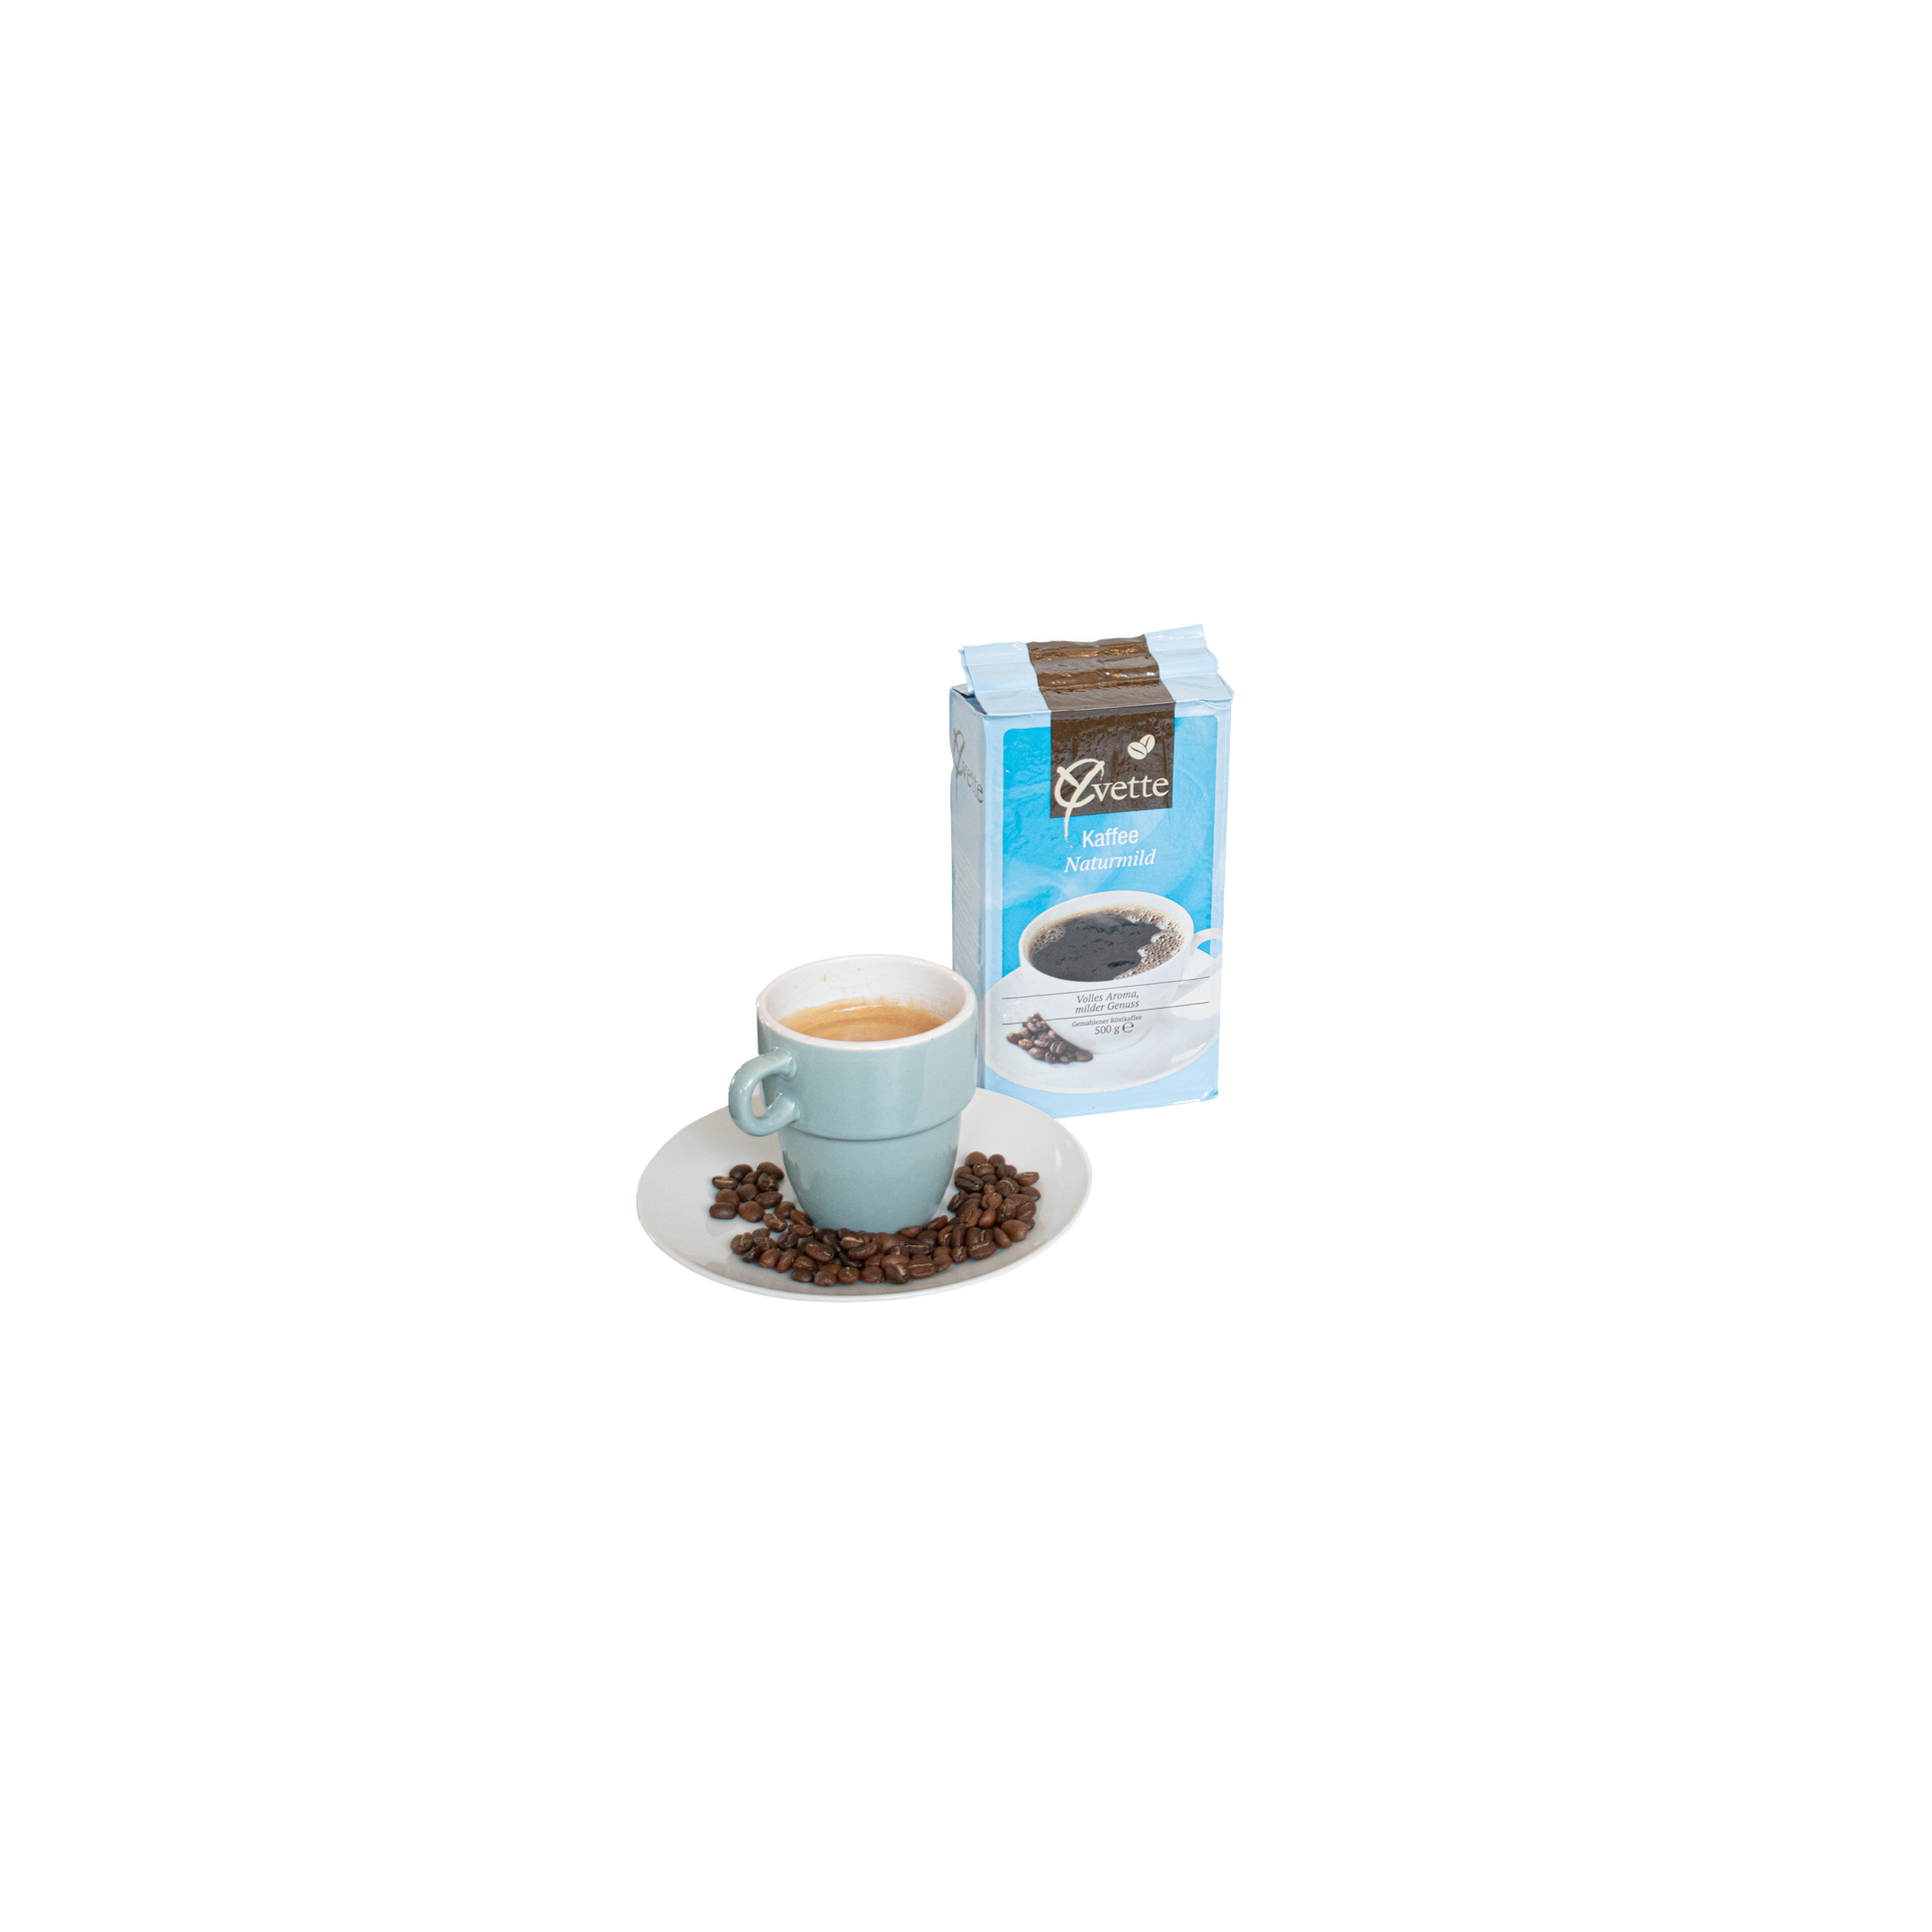 500g gemahlener Filterkaffee der Sorte Naturmild der Marke Yvette Kaffee mit einer Tasse Kaffee auf einer Untertasse mit Kaffeebohnen als Serviervorschlag